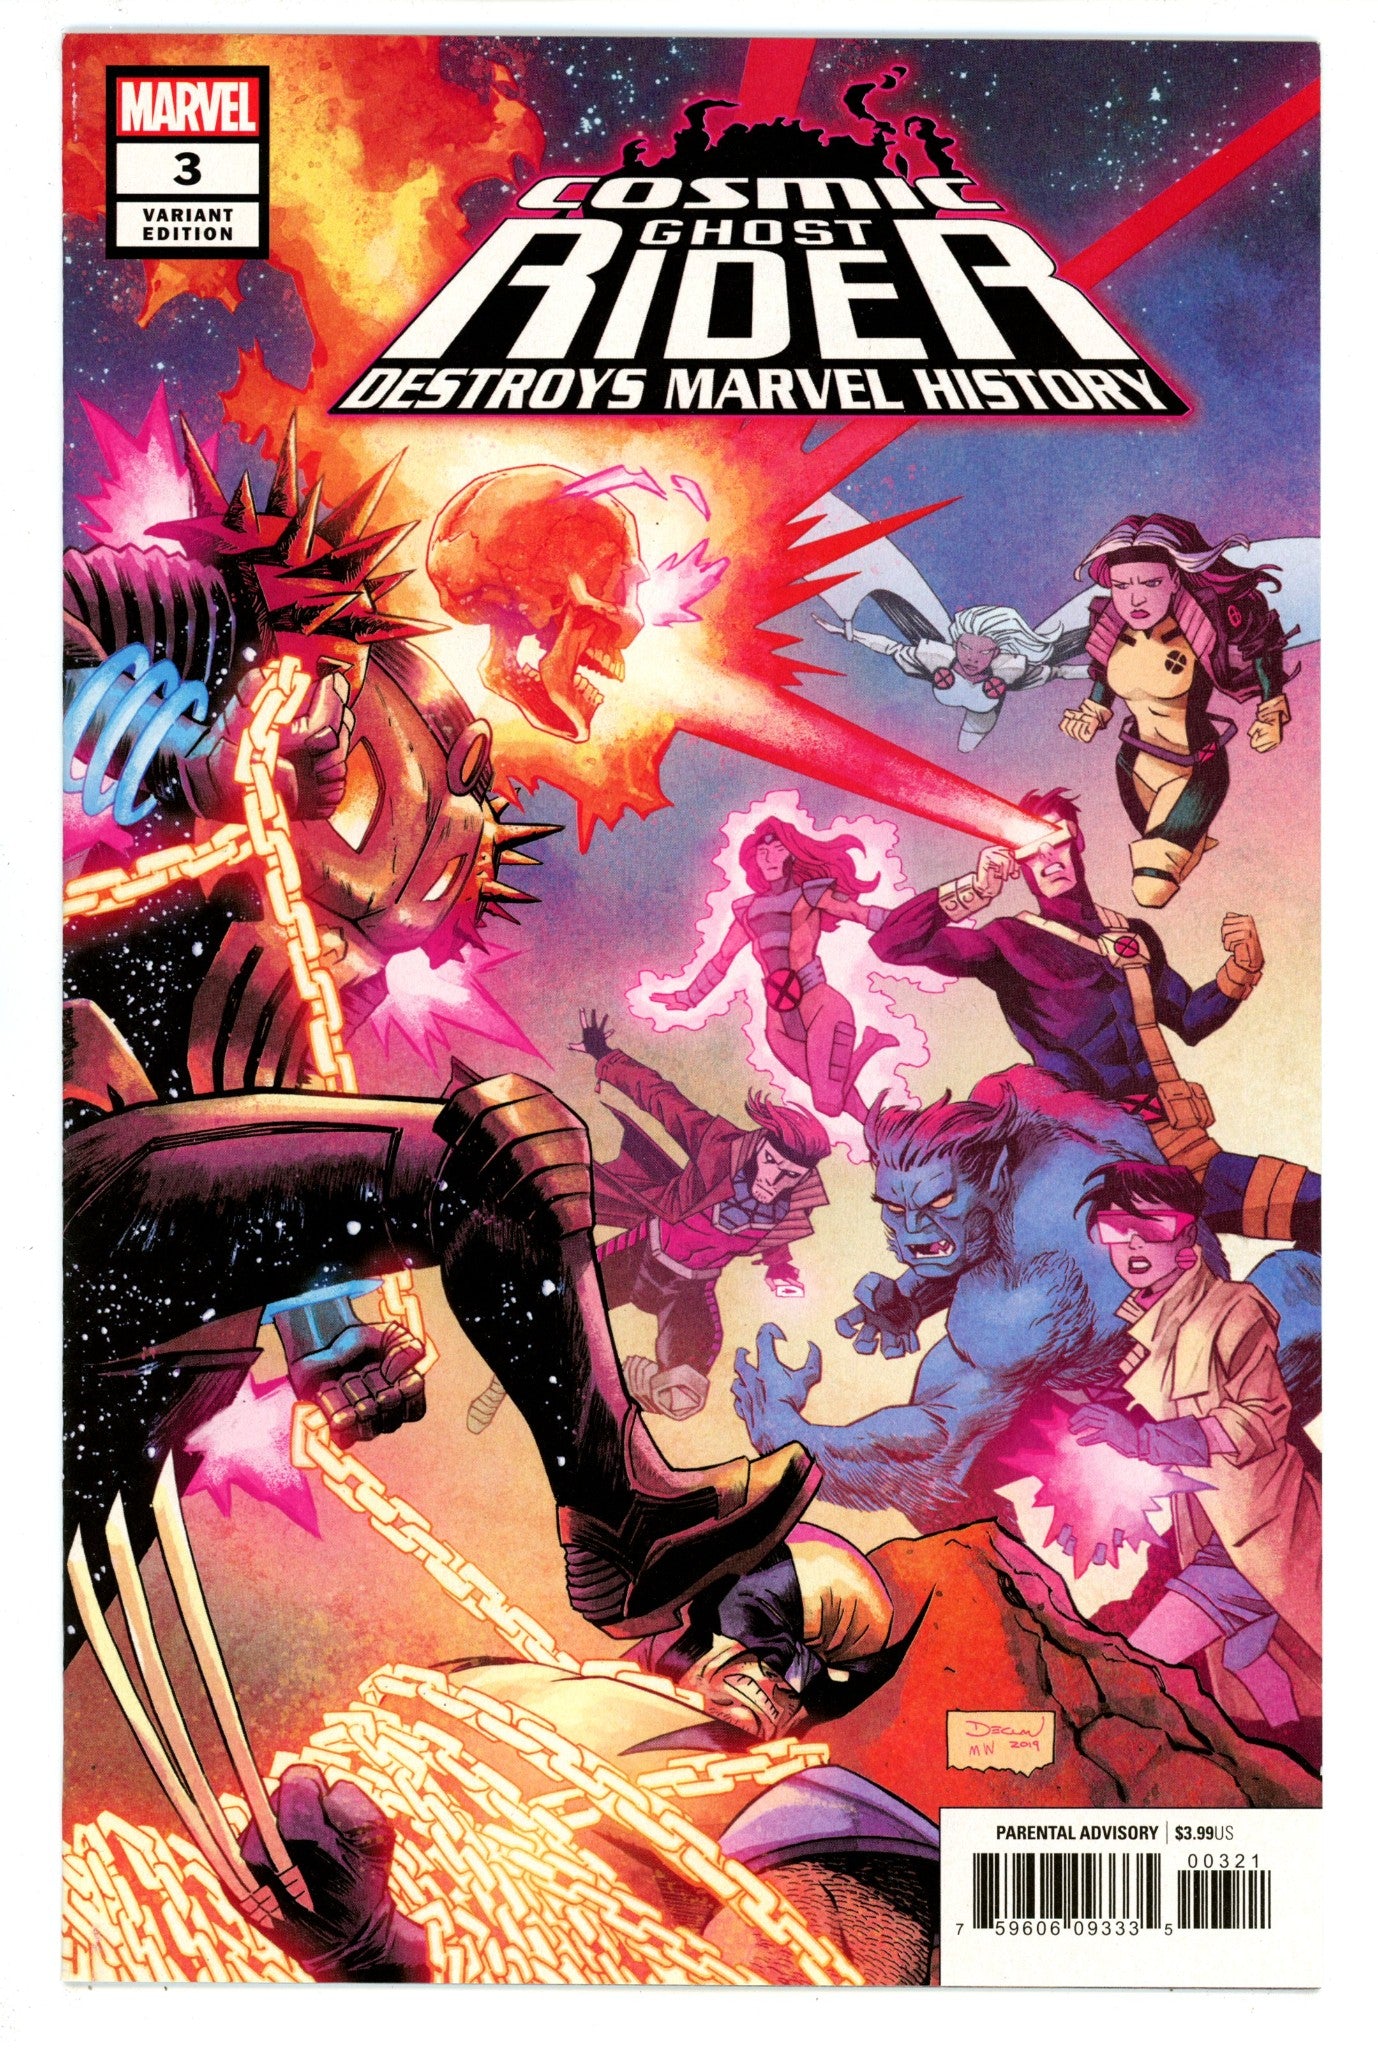 Cosmic Ghost Rider Destroys Marvel History 3 High Grade (2019) Shalvey Variant 